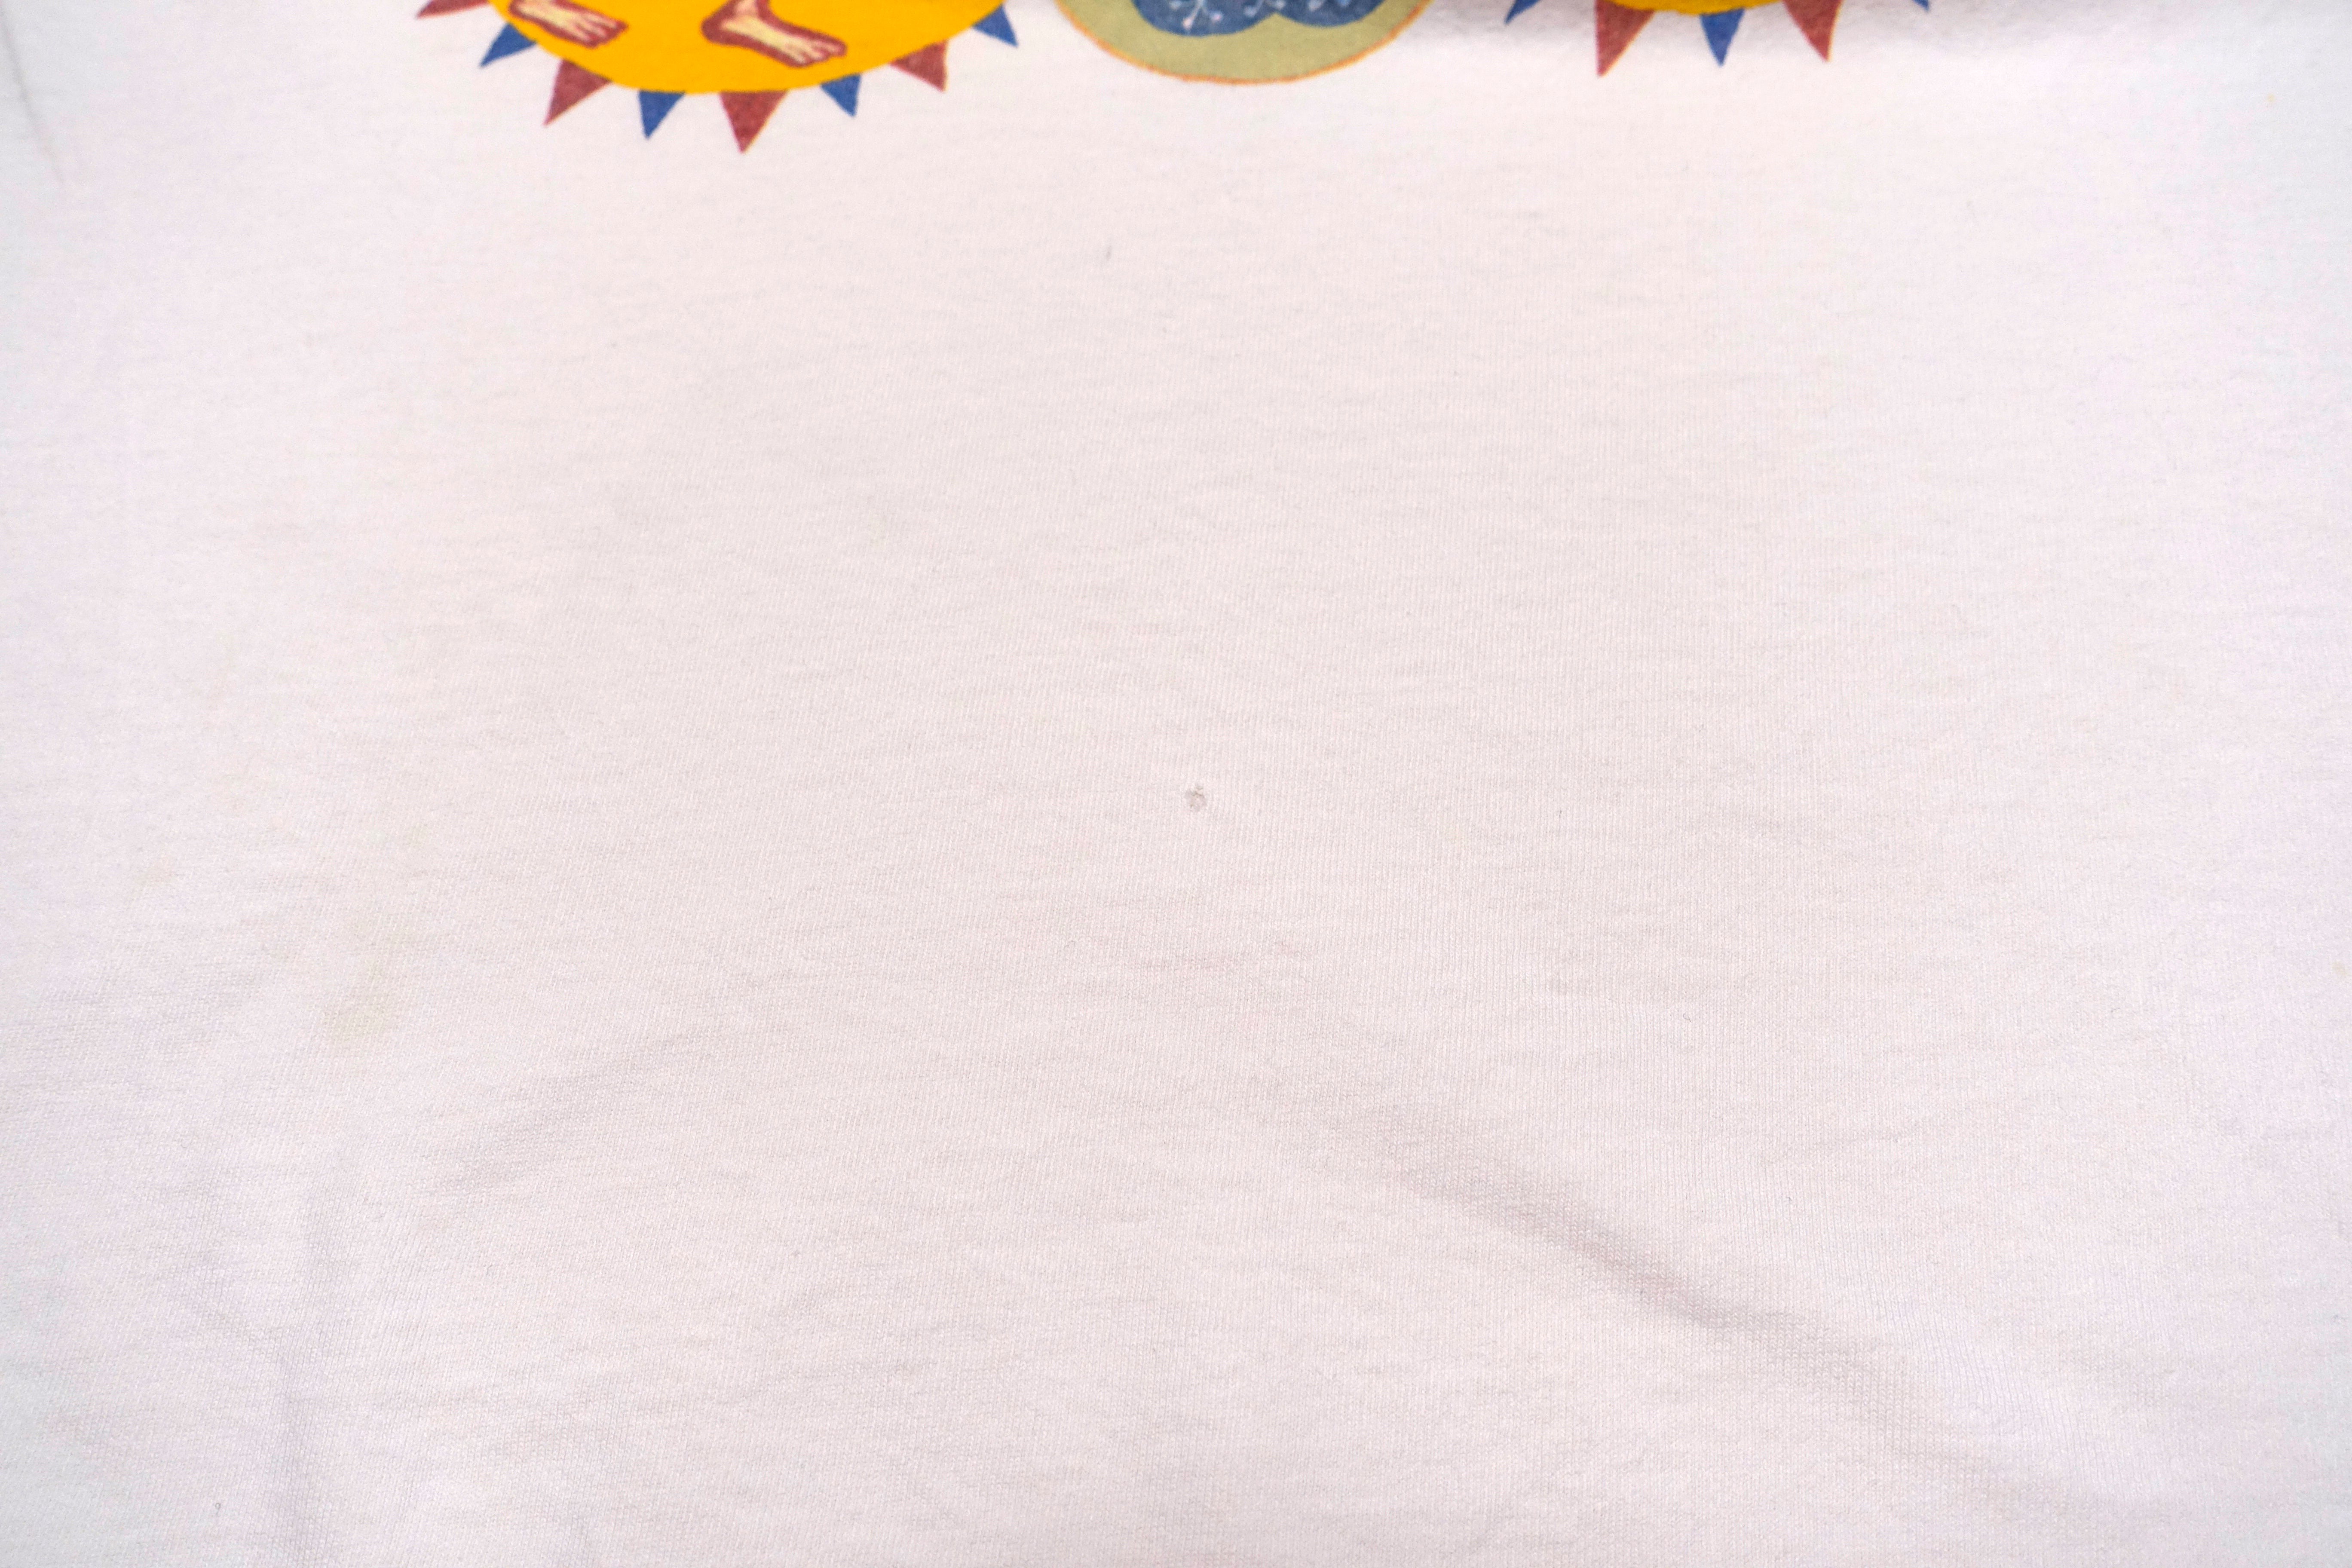 Oingo Boingo – Dia De Los Muertos 1995 Tour Shirt Size Large